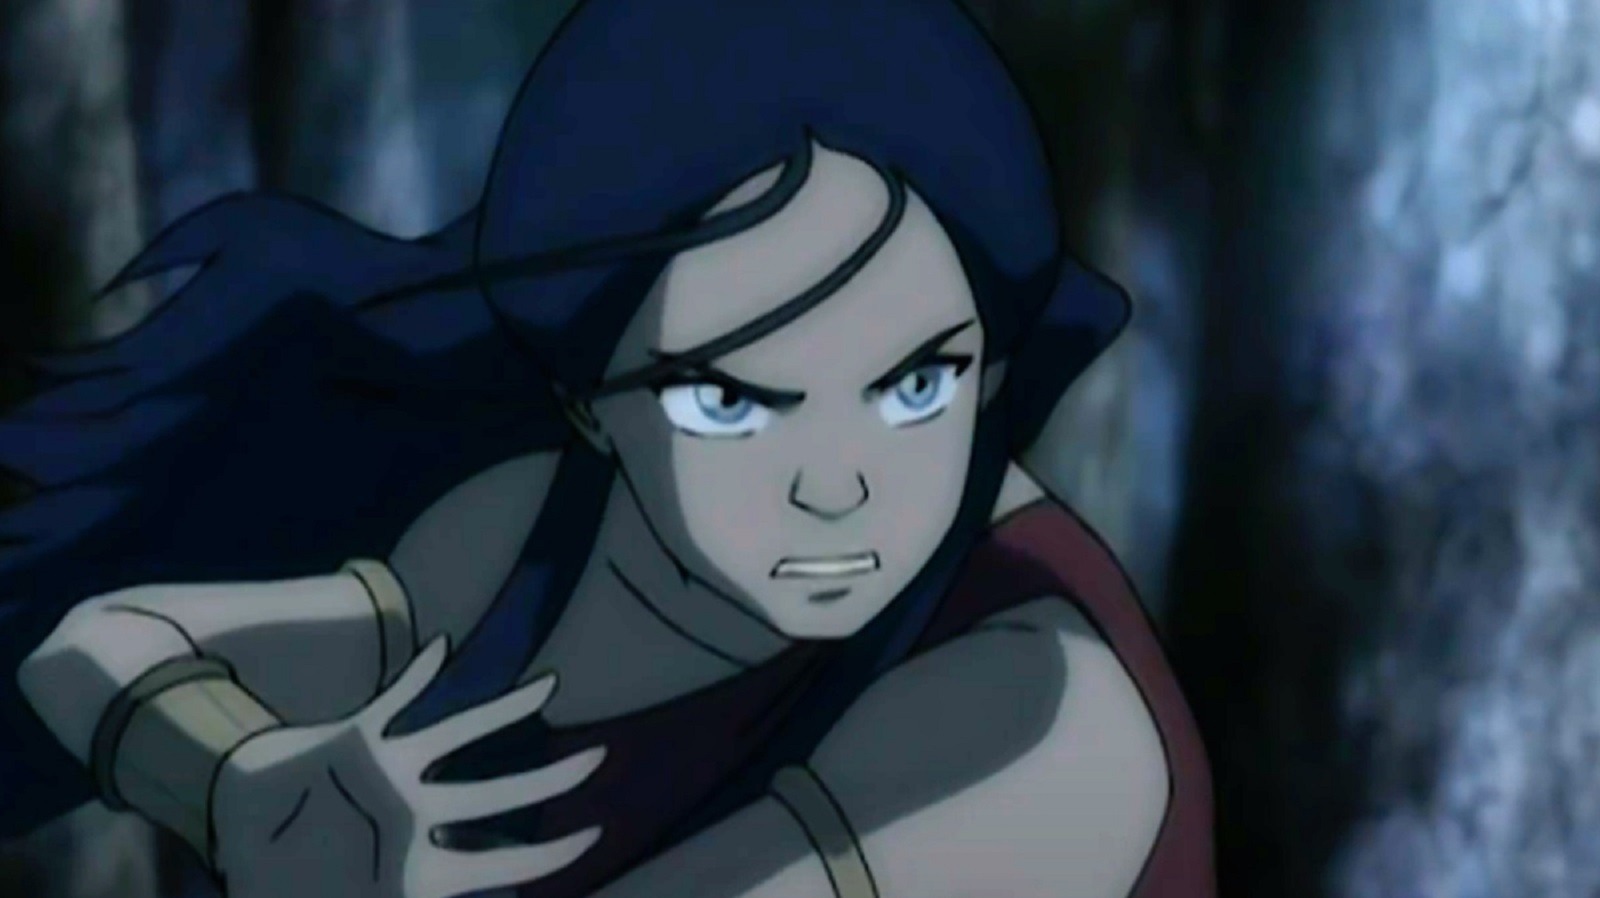 Katara Avatar:
Một nhân vật đầy quyến rũ và thần bí, bạn sẽ không thể bỏ qua Katara Avatar trong cuộc phiêu lưu của Aang. Với sức mạnh đáng kinh ngạc và khả năng điều khiển nước điện, Katara sẵn sàng chiến đấu vì bảo vệ cuộc sống. Đã đến lúc bạn trải nghiệm hành trình đầy mạo hiểm bằng cách xem hình ảnh của cô ấy!